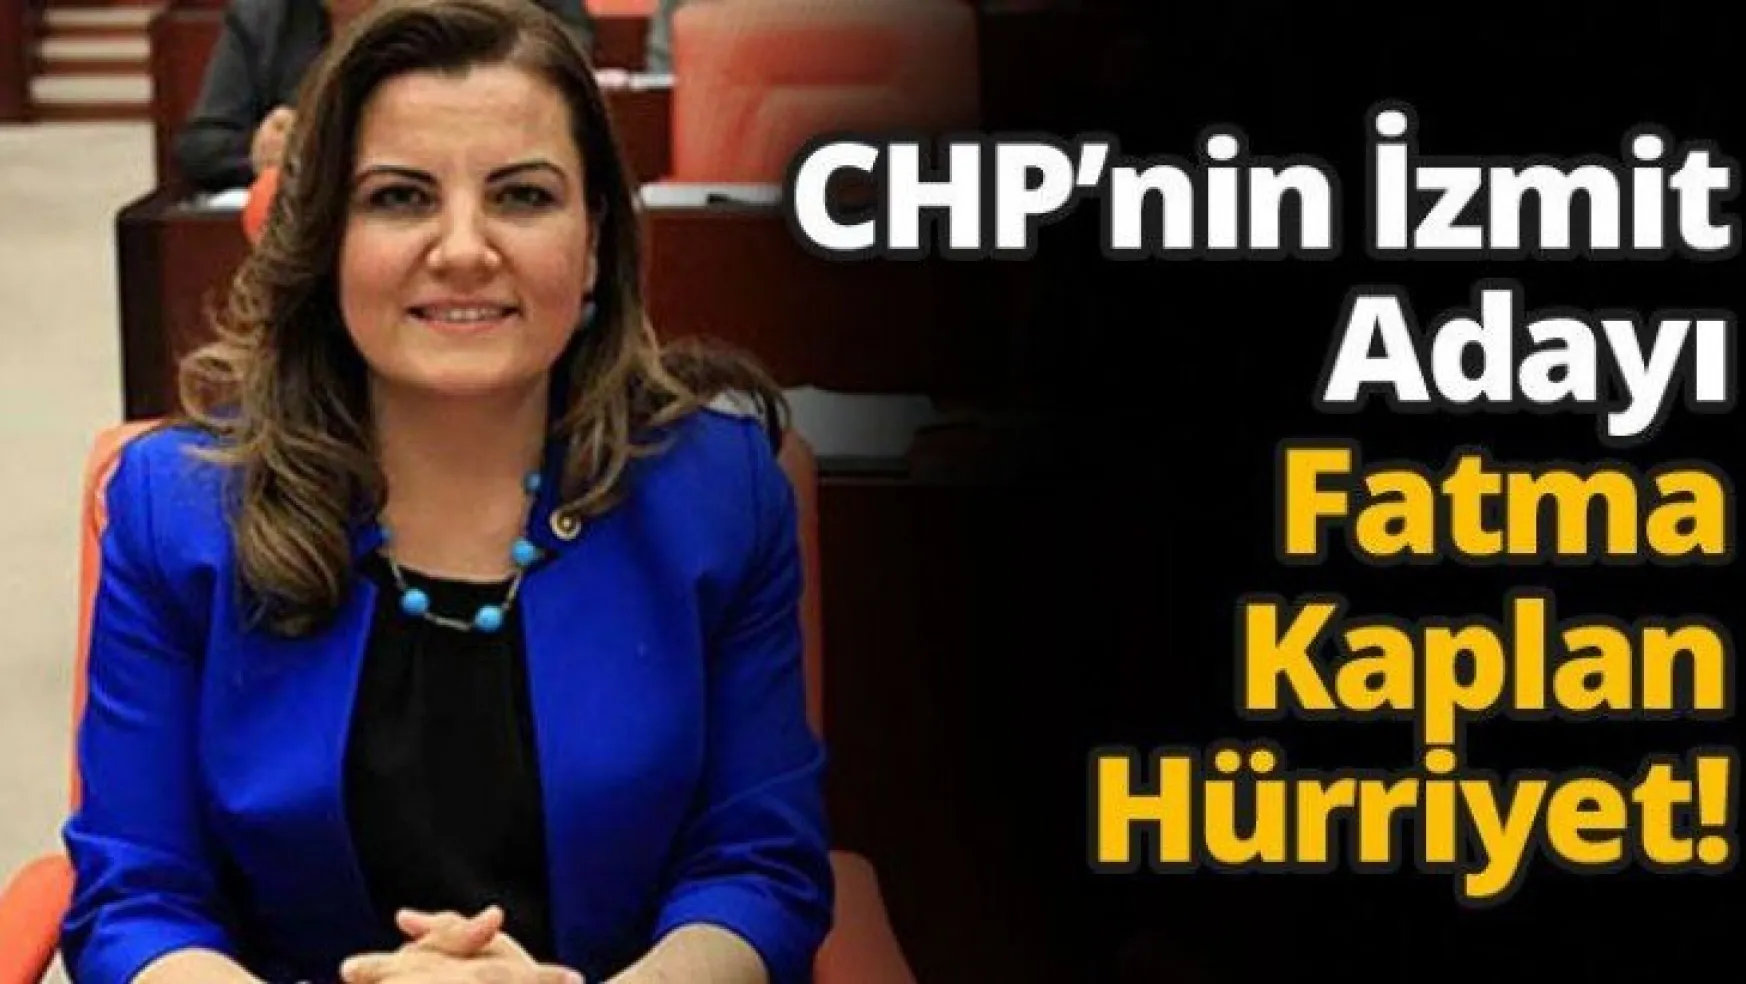 CHP'nin İzmit Adayı Fatma Kaplan Hürriyet!